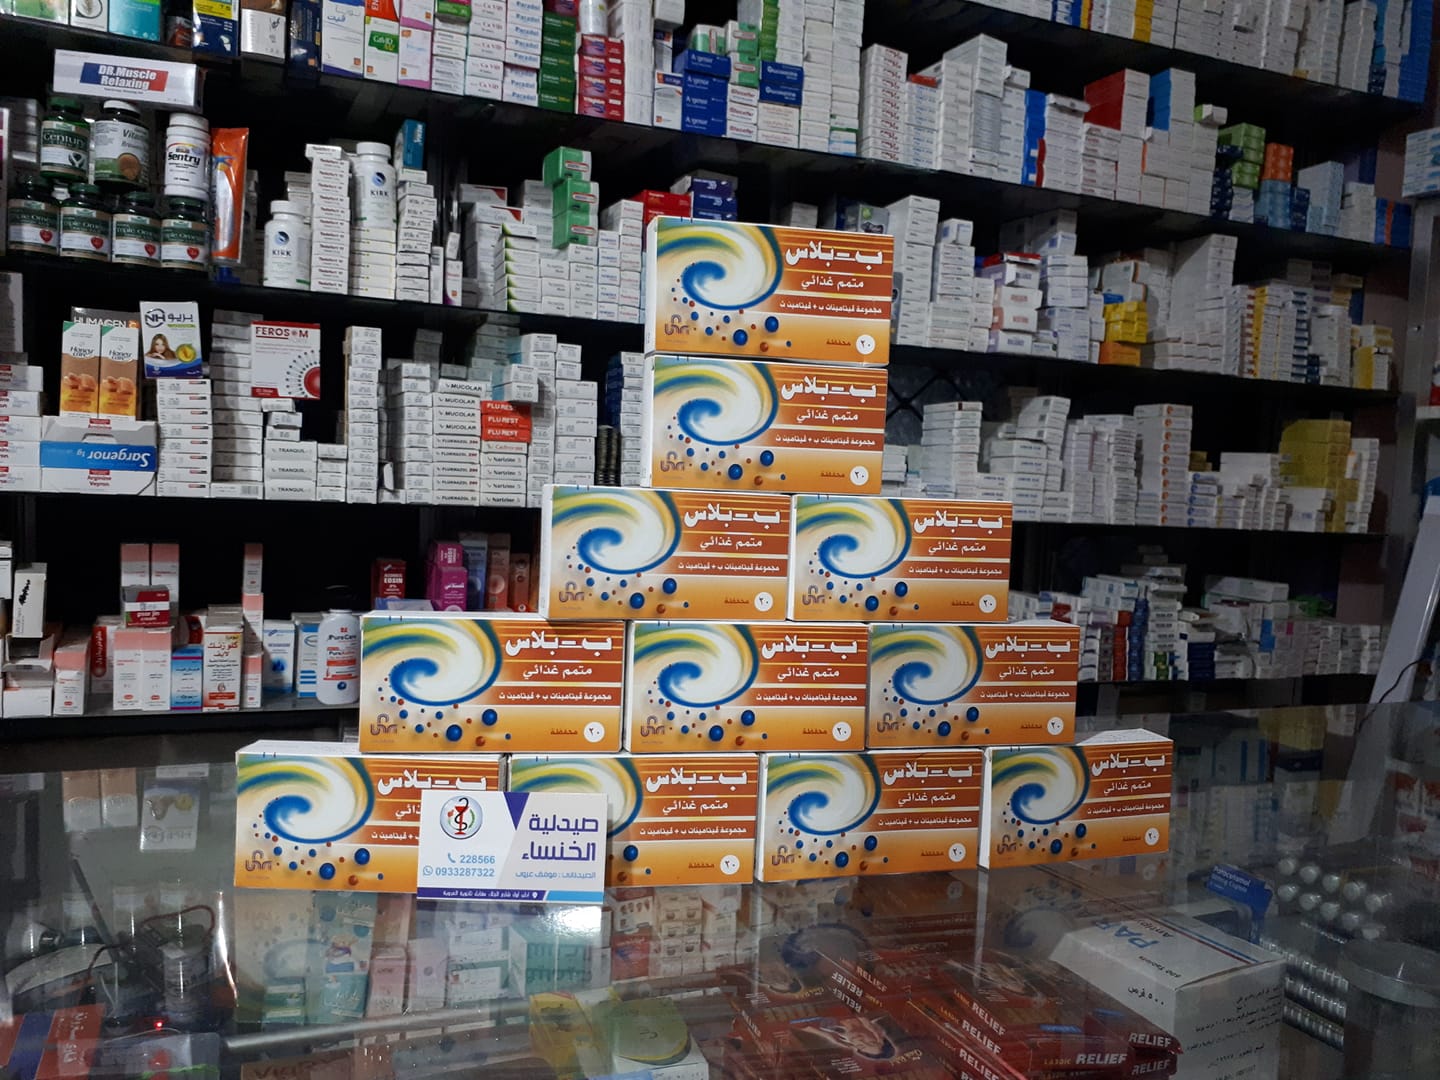 أعلنت وزارة الصحة في حكومة الإنقاذ عن تخفيض أسعار الأدوية السورية غير المصنعة محليًا.